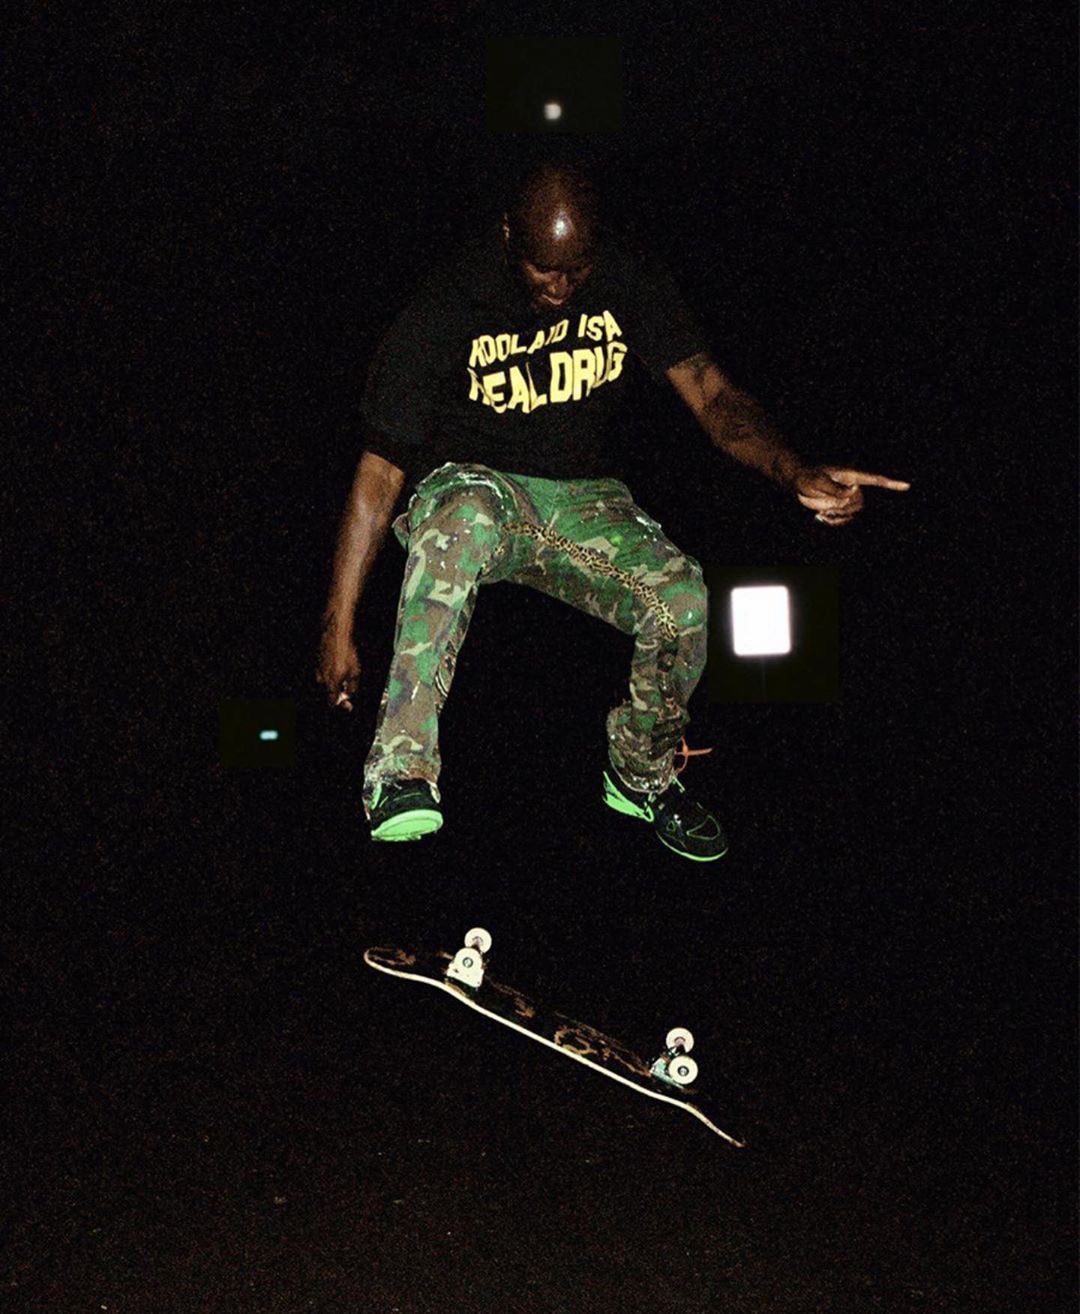 Ovrnundr on X: Virgil Abloh skateboarding in upcoming Off-White x